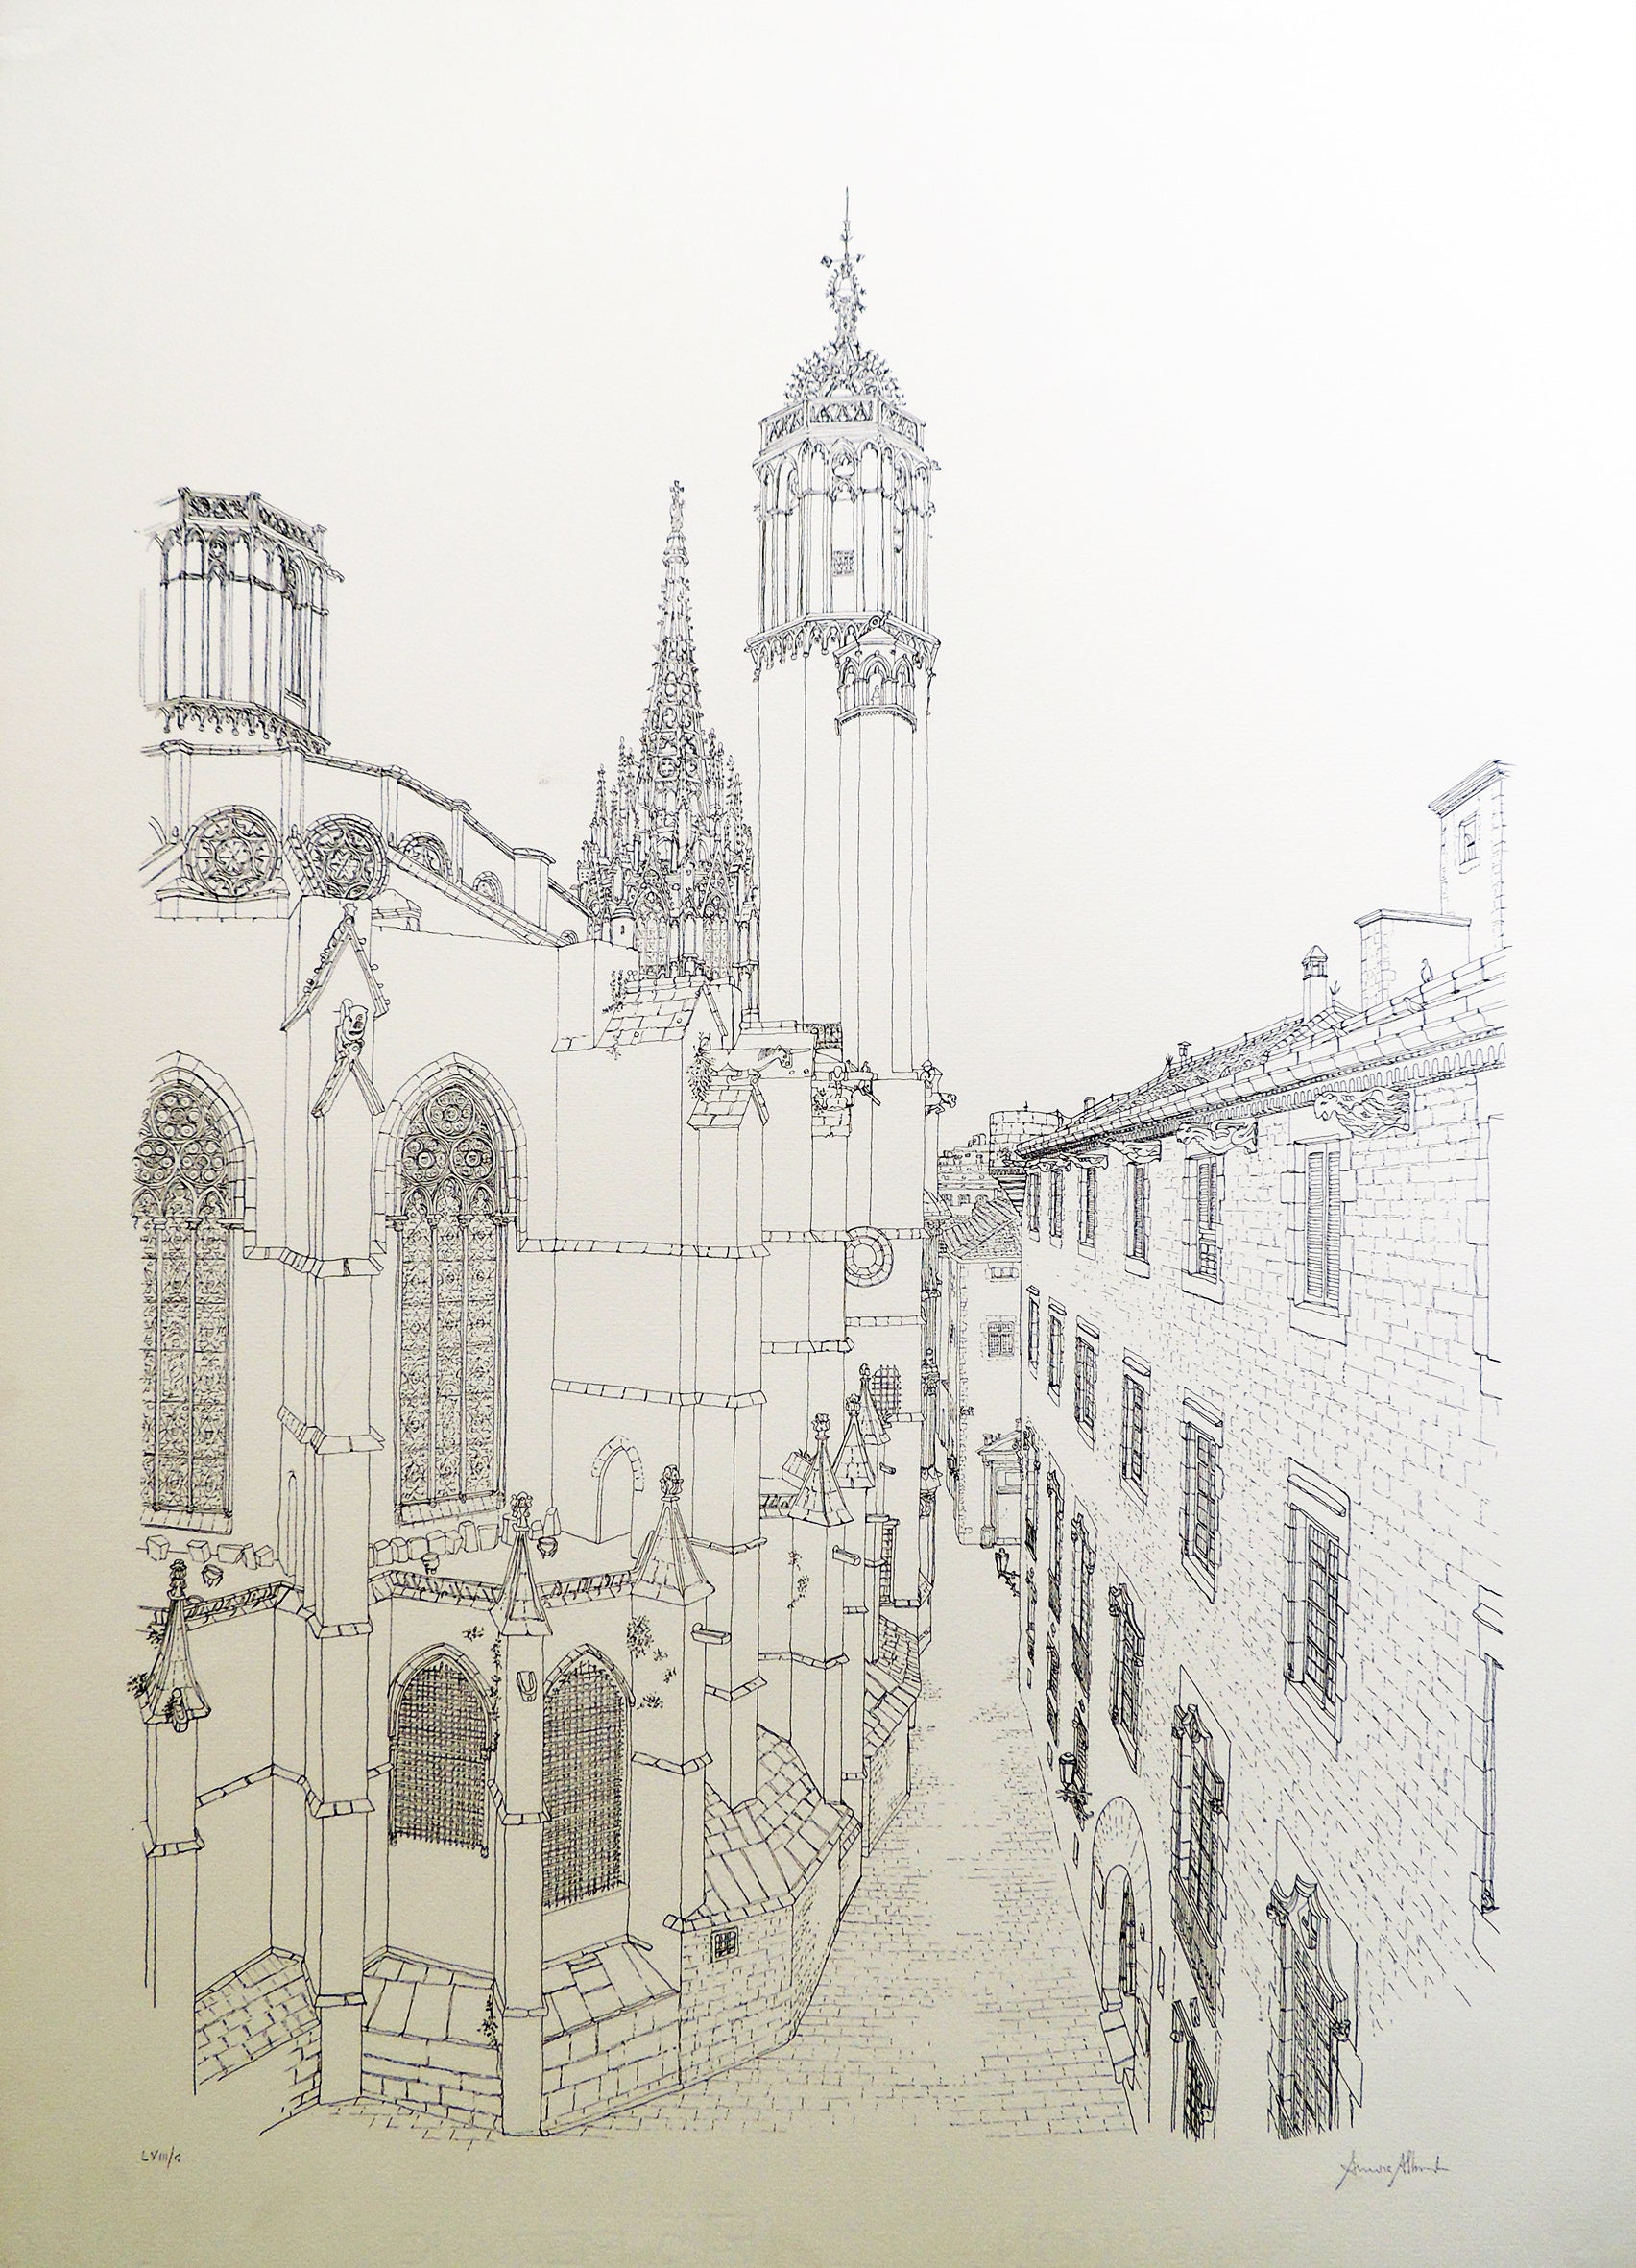 Aurora Altisent litografia calle Barcelona catedral Gaudifond 